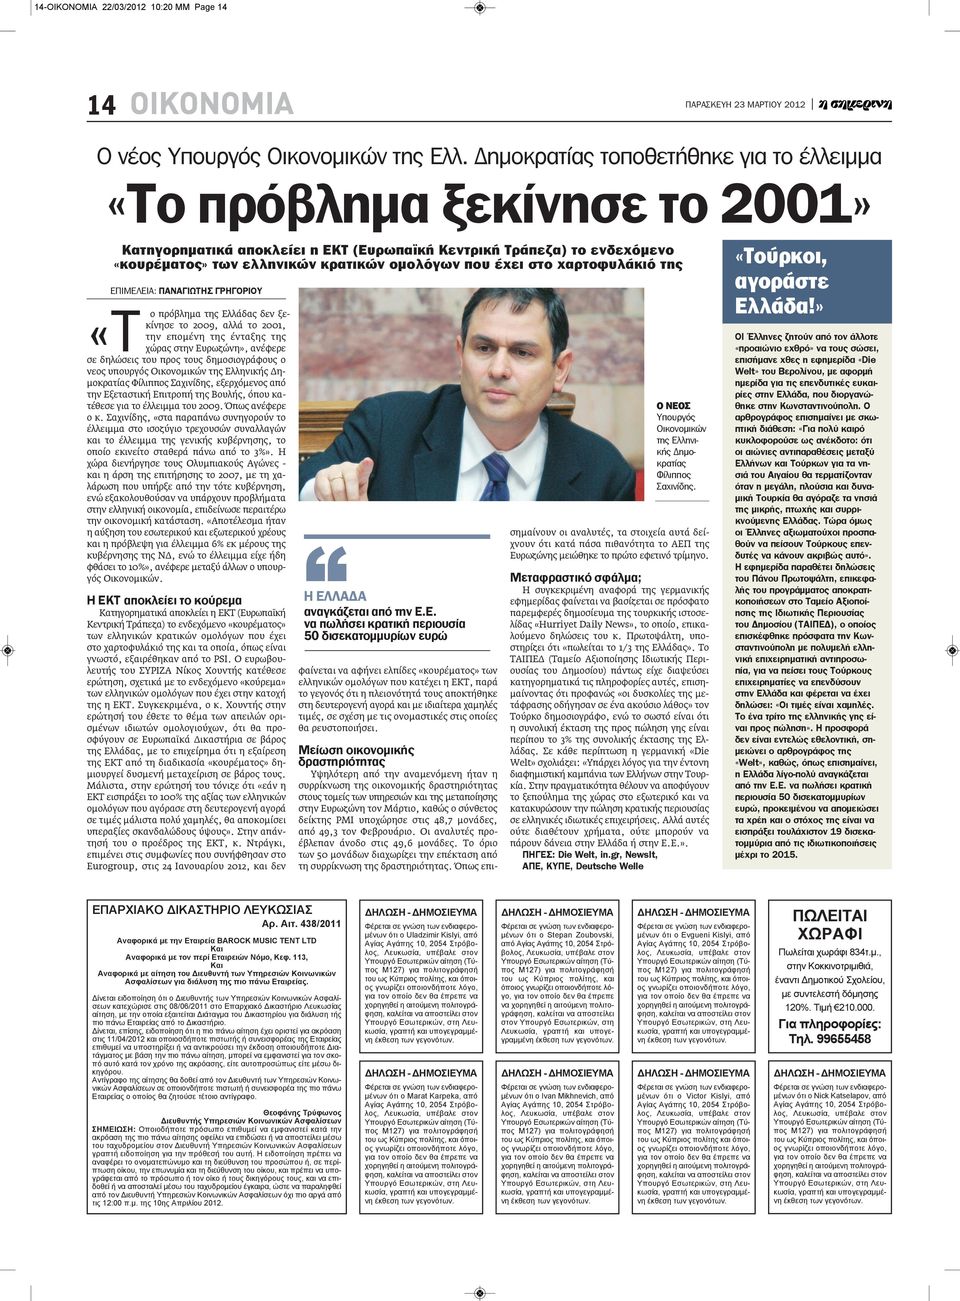 στο χαρτοφυλάκιό της ΕΠΙΜΕΛΕΙΑ: ΠΑΝΑΓιΩΤΗΣ ΓΡΗΓΟΡιΟΥ «Τ ο πρόβλημα της Ελλάδας δεν ξεκίνησε το 2009, αλλά το 2001, την επομένη της ένταξης της χώρας στην Ευρωζώνη», ανέφερε σε δηλώσεις του προς τους